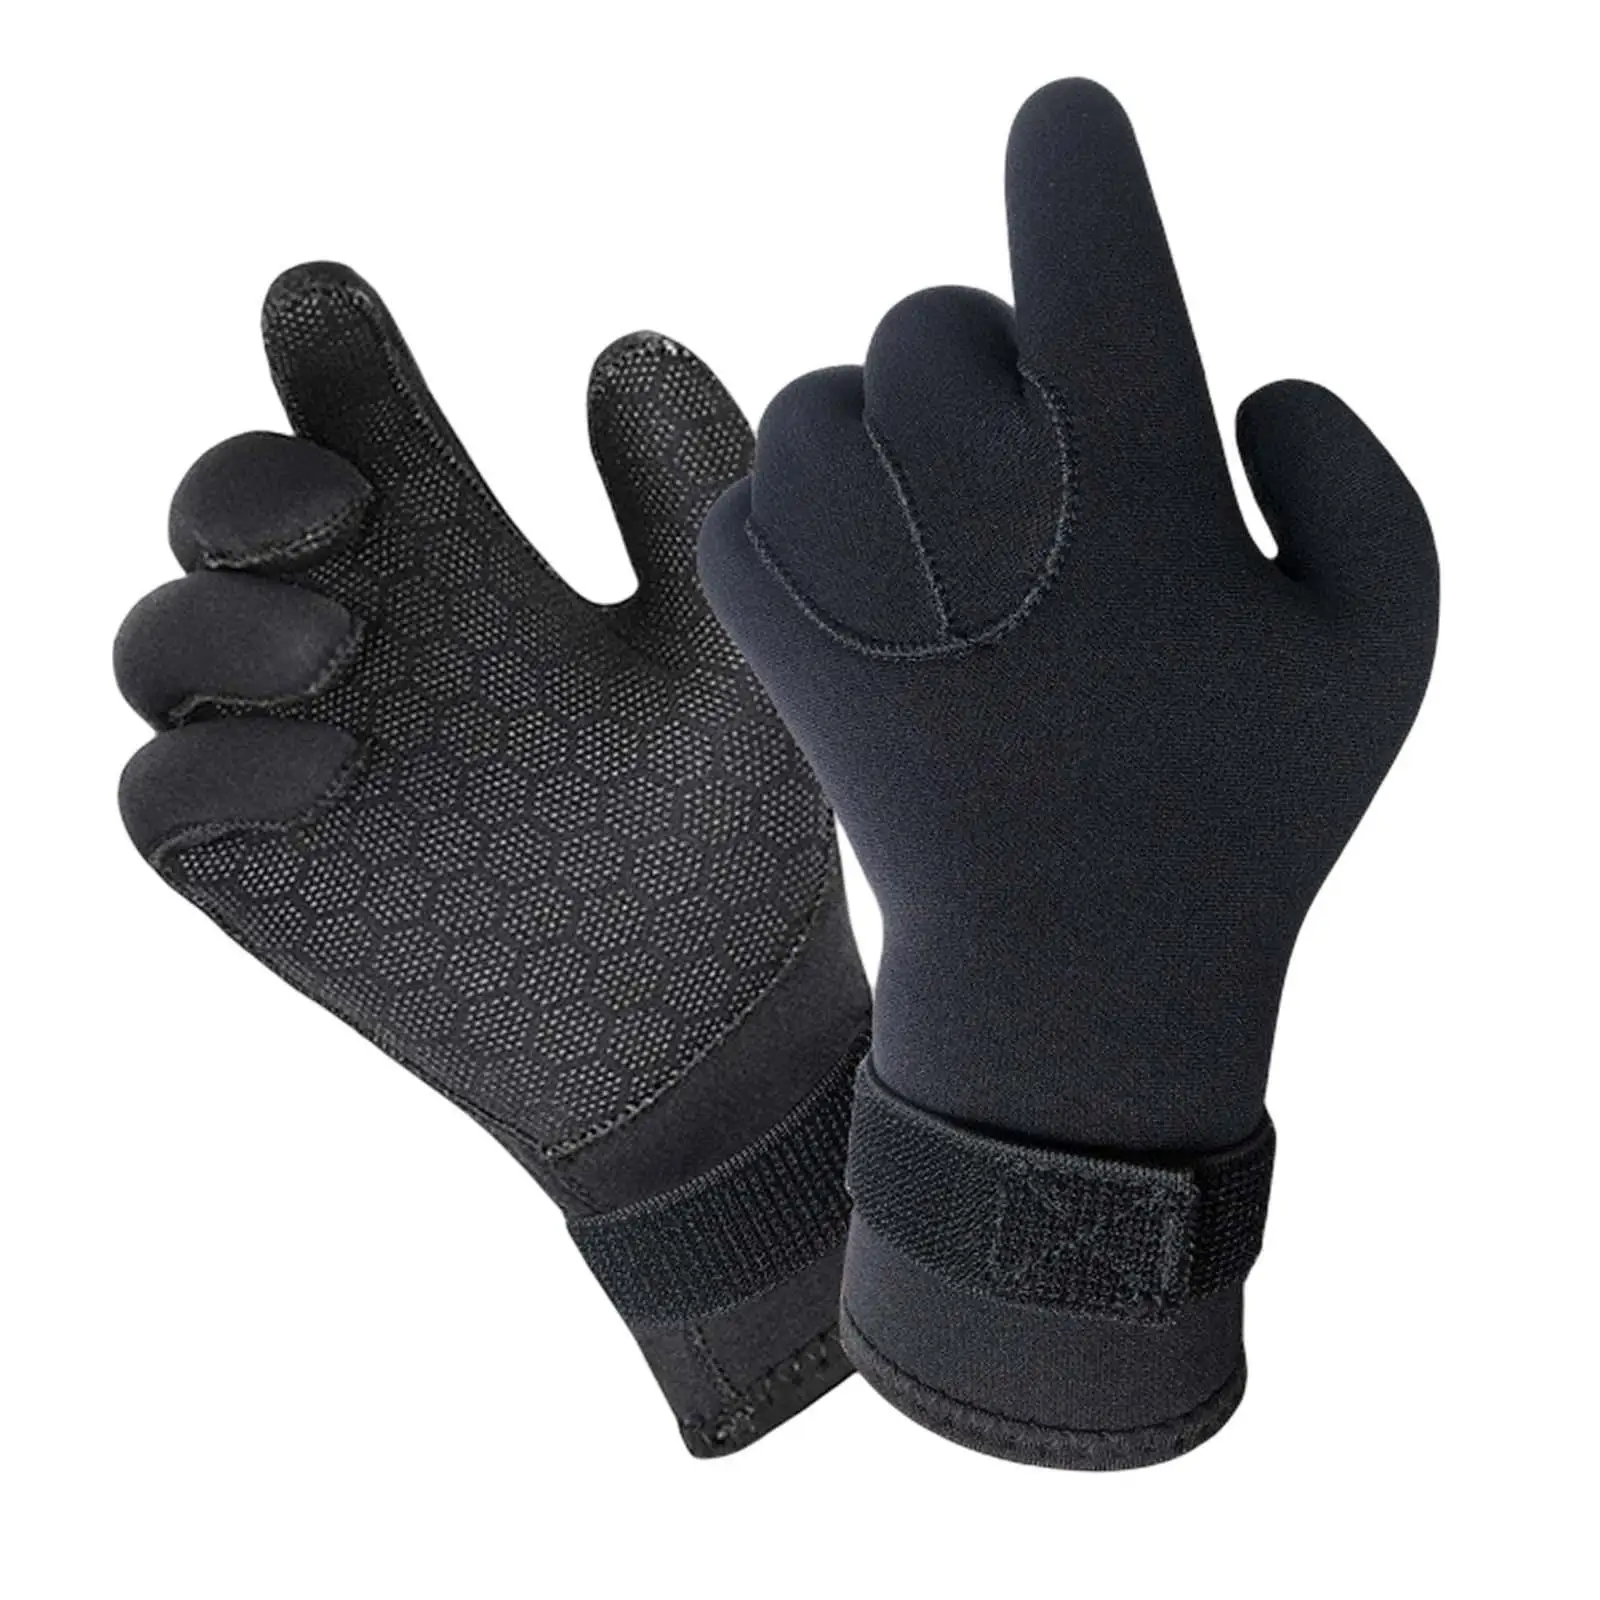 Diving Gloves Neoprene Wetsuit Winter Gloves Anti Slip Five Finger Gloves for Paddling Spearfishing Swimming Rafting Surfing